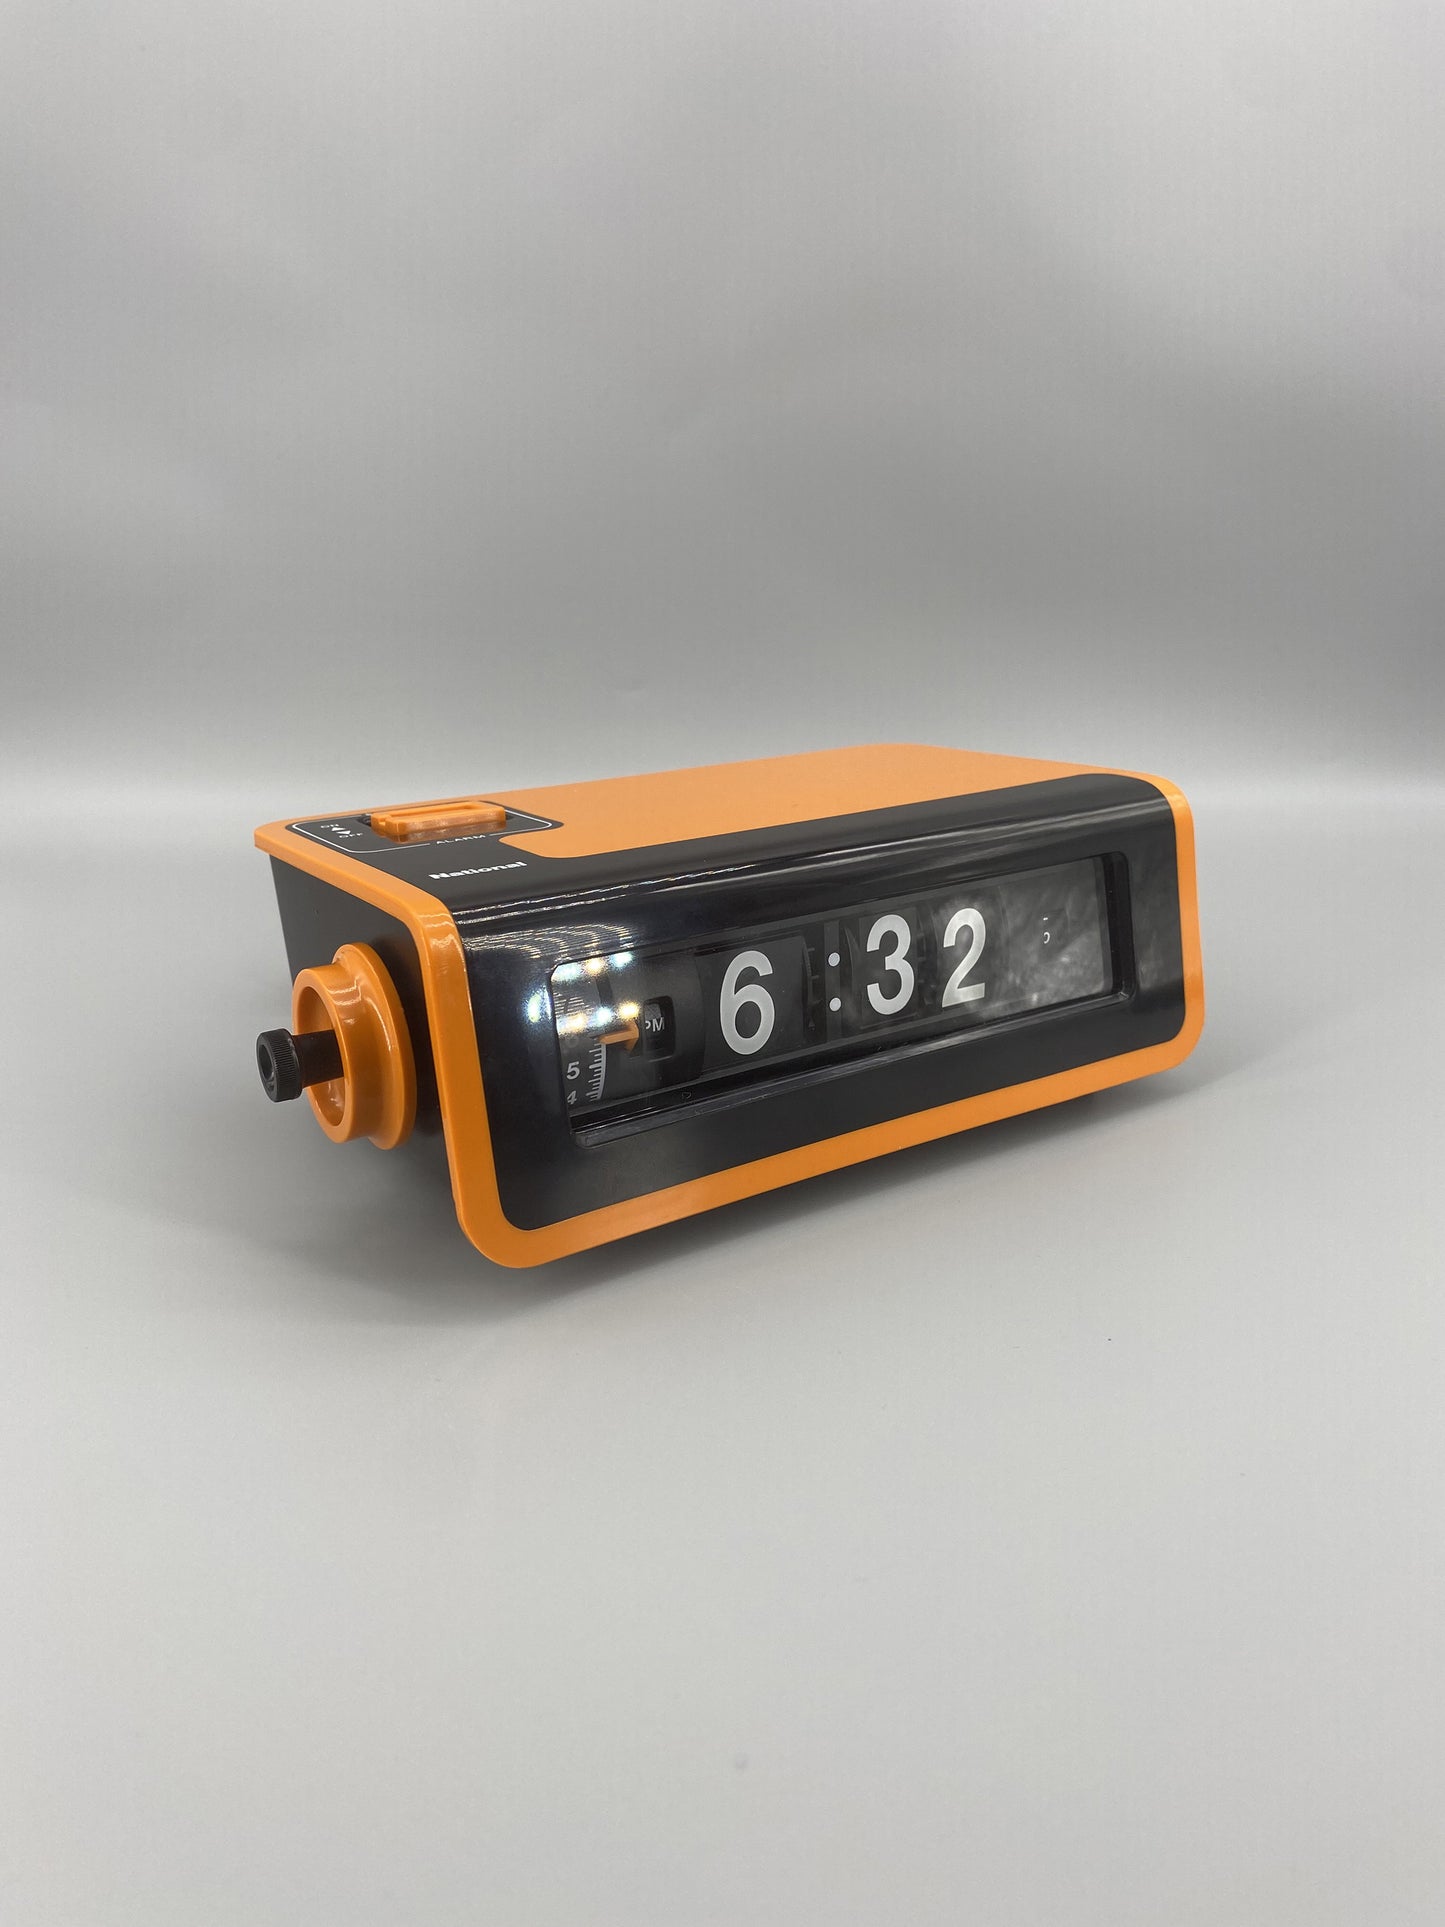 日本制 70s National TG02 Alarm Flip Clock 翻頁鐘 橙色 有盒